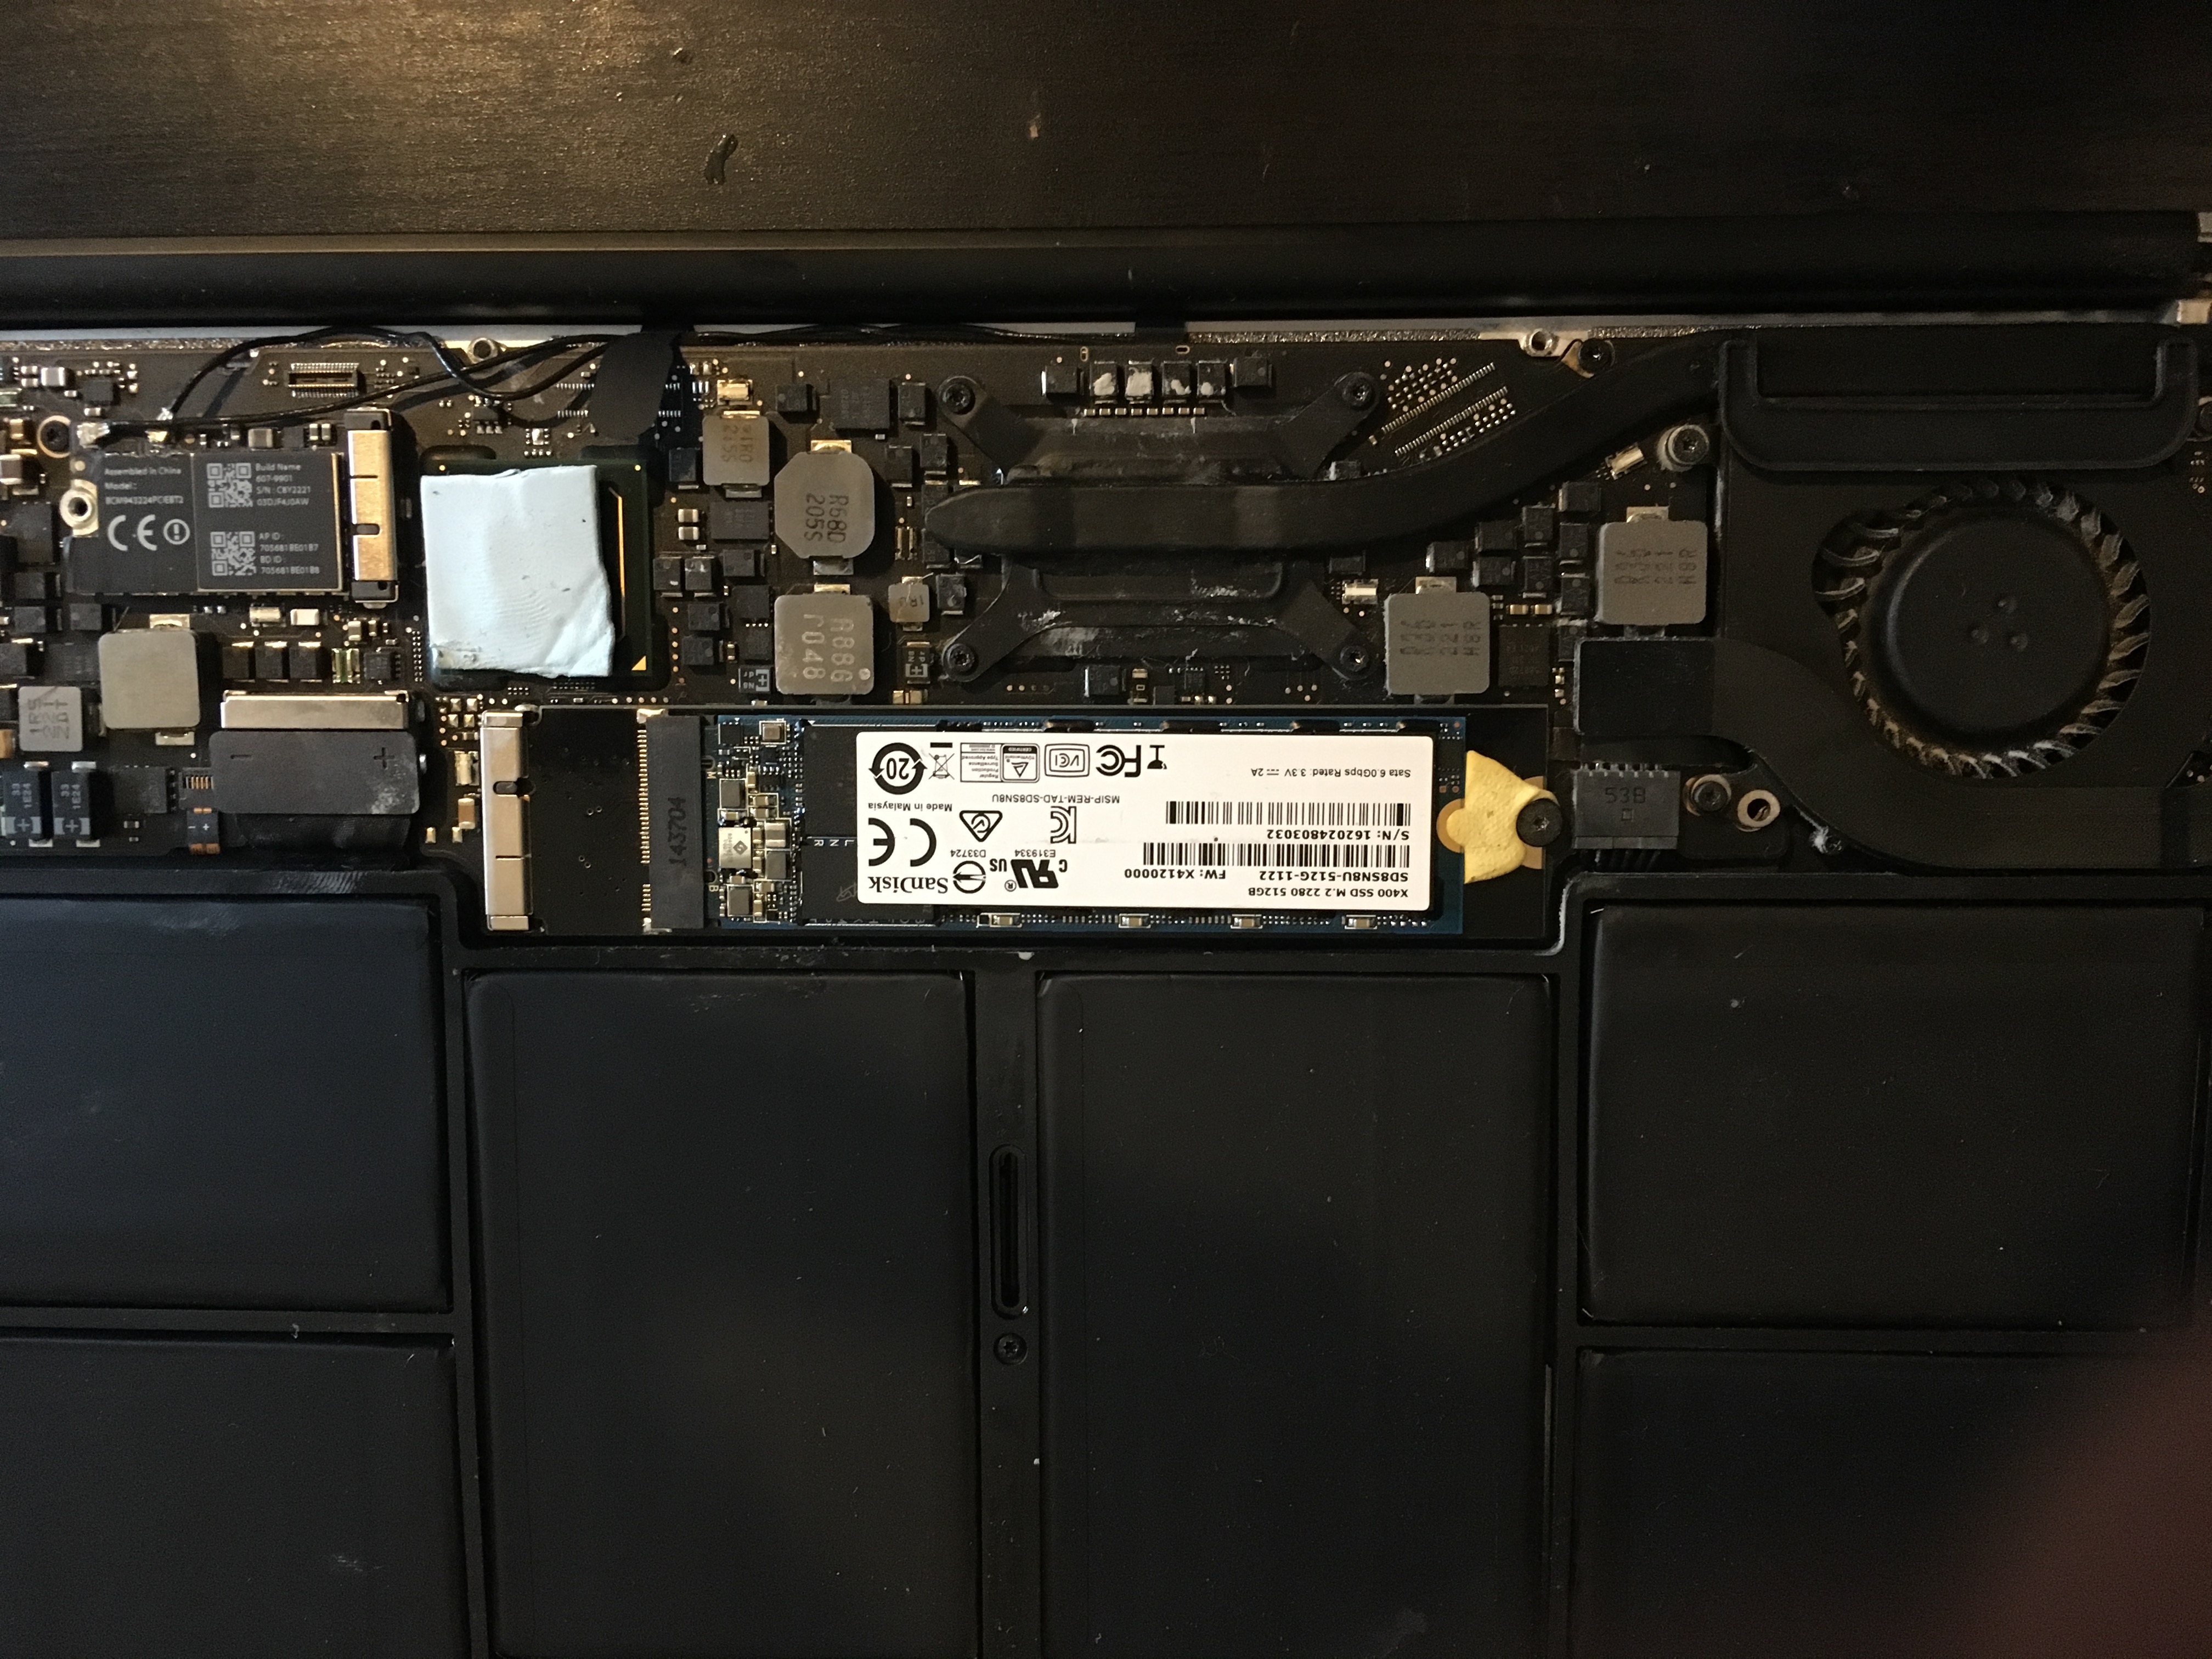 iMac 27 2020 : les SSD arrivent soudés 🆕